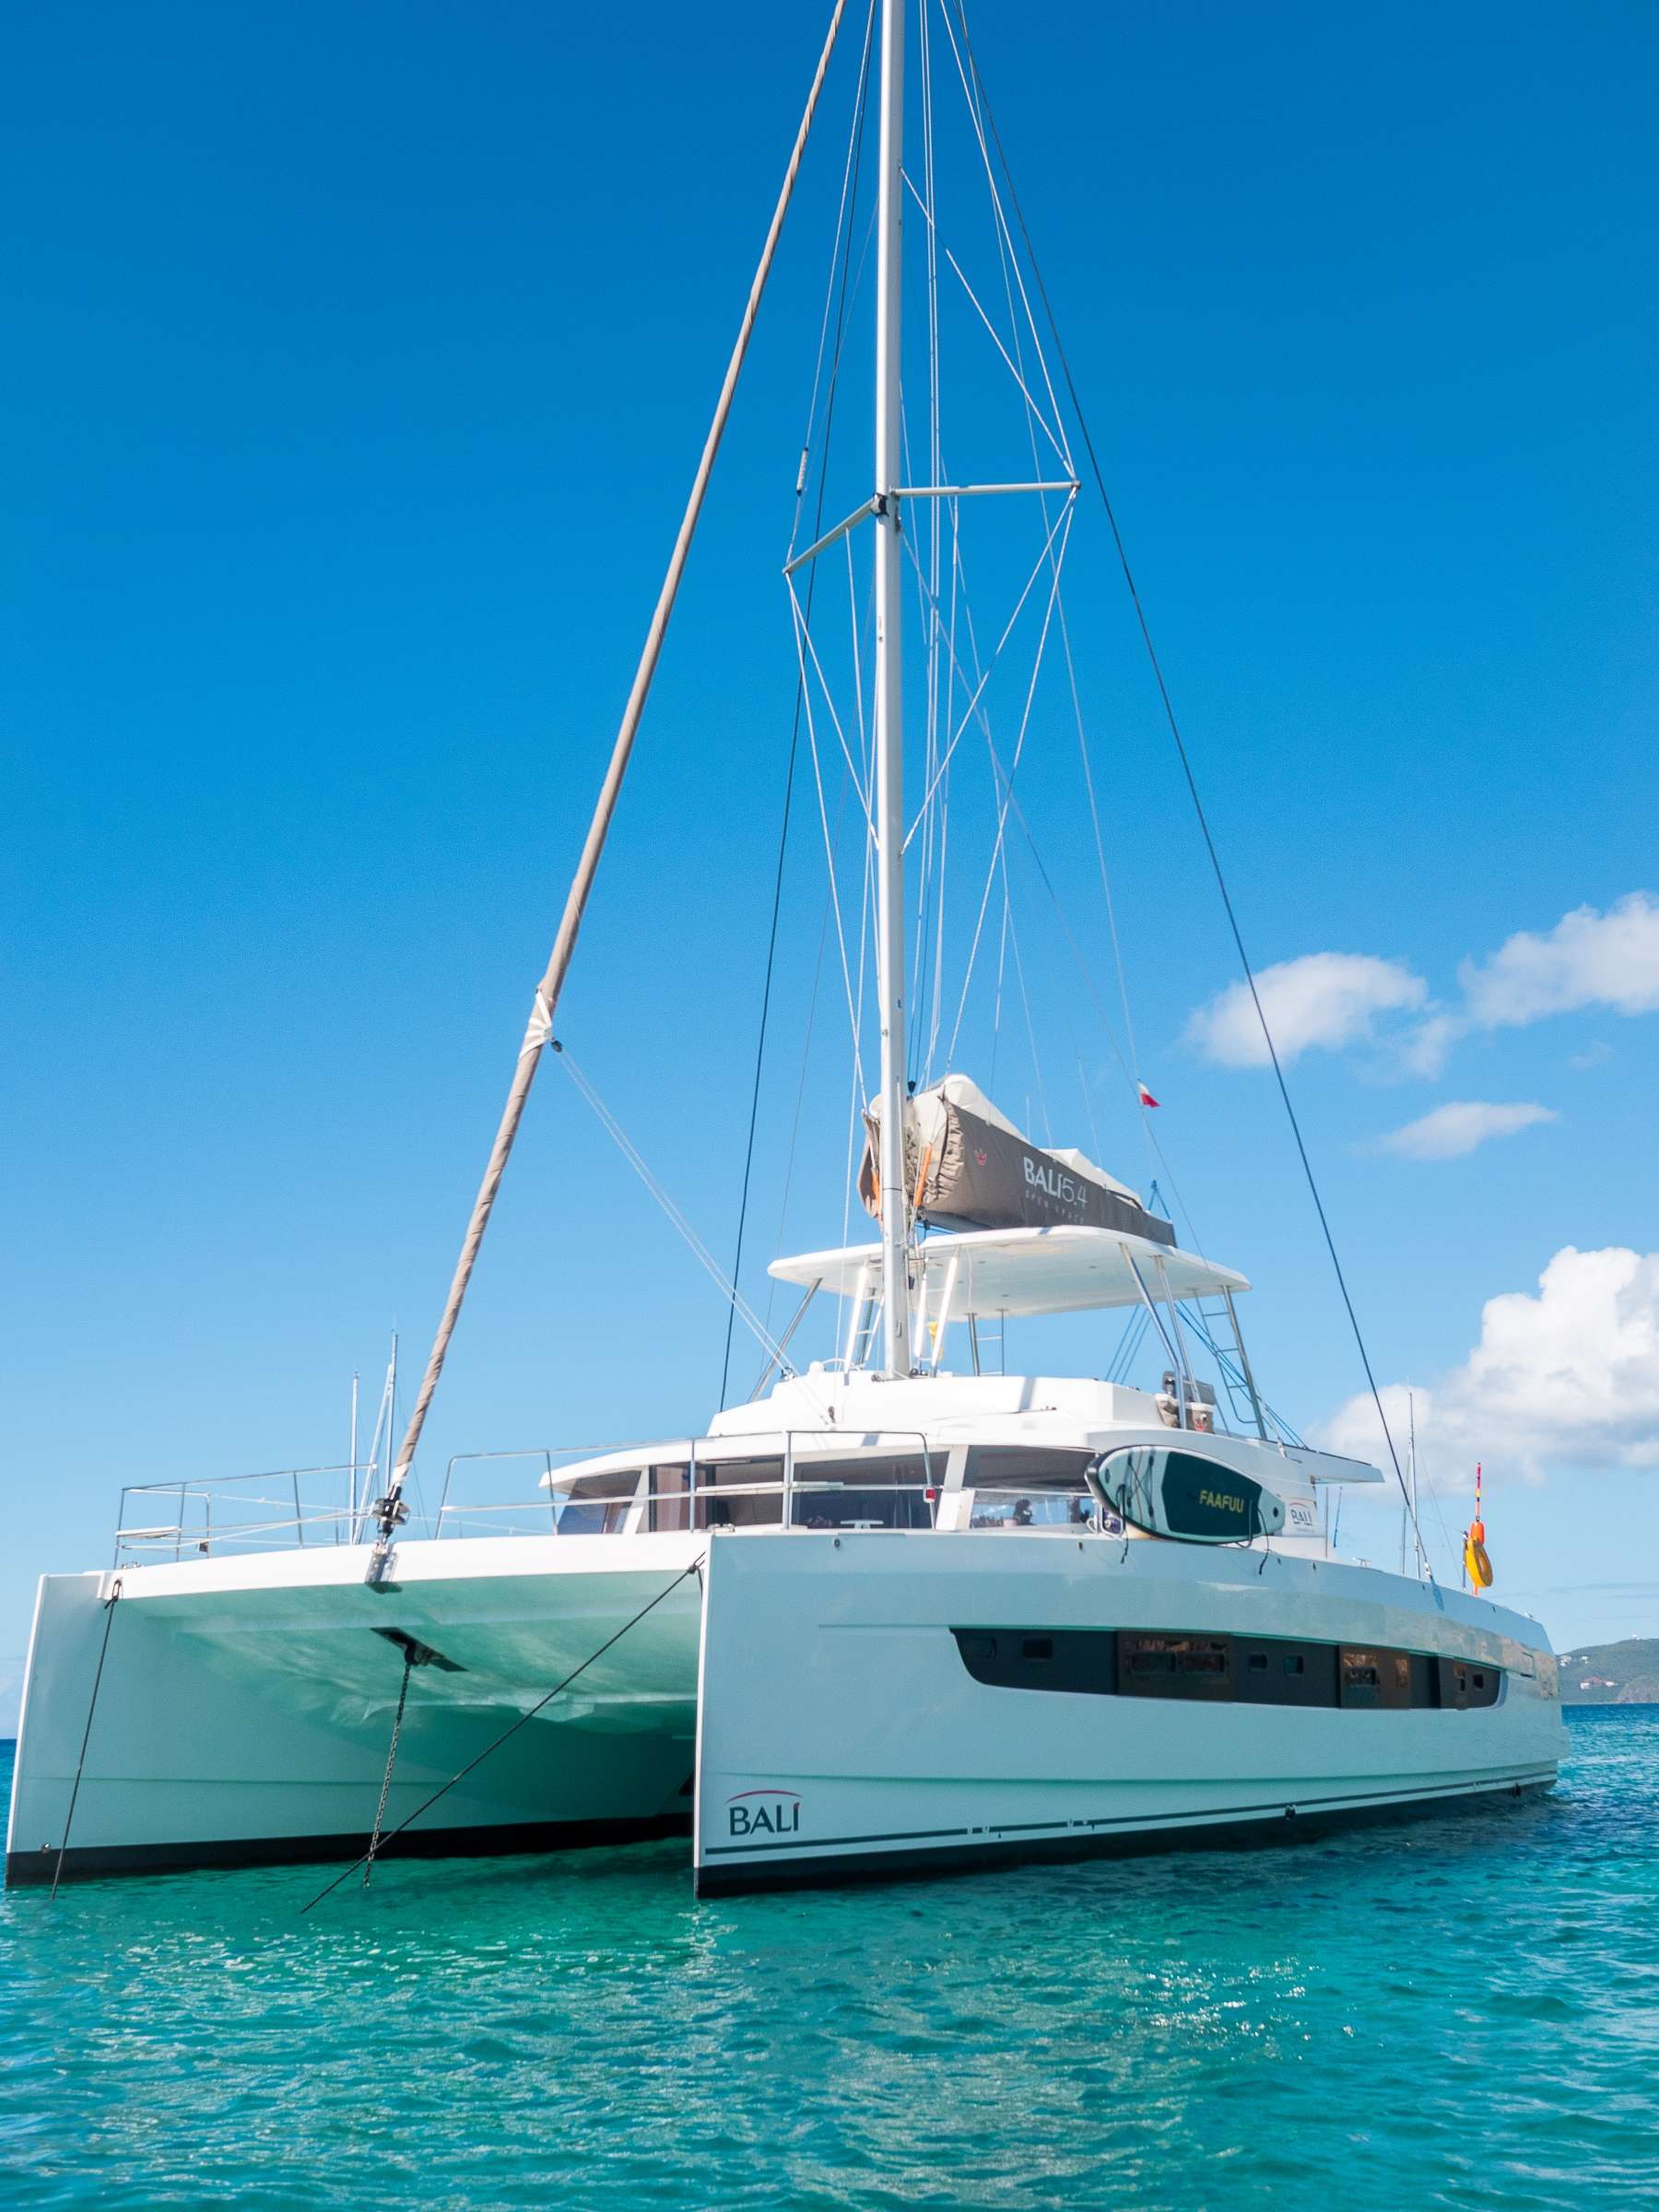 LEGASEA - Yacht Charter Nelsons Dockyard & Boat hire in Caribbean 1